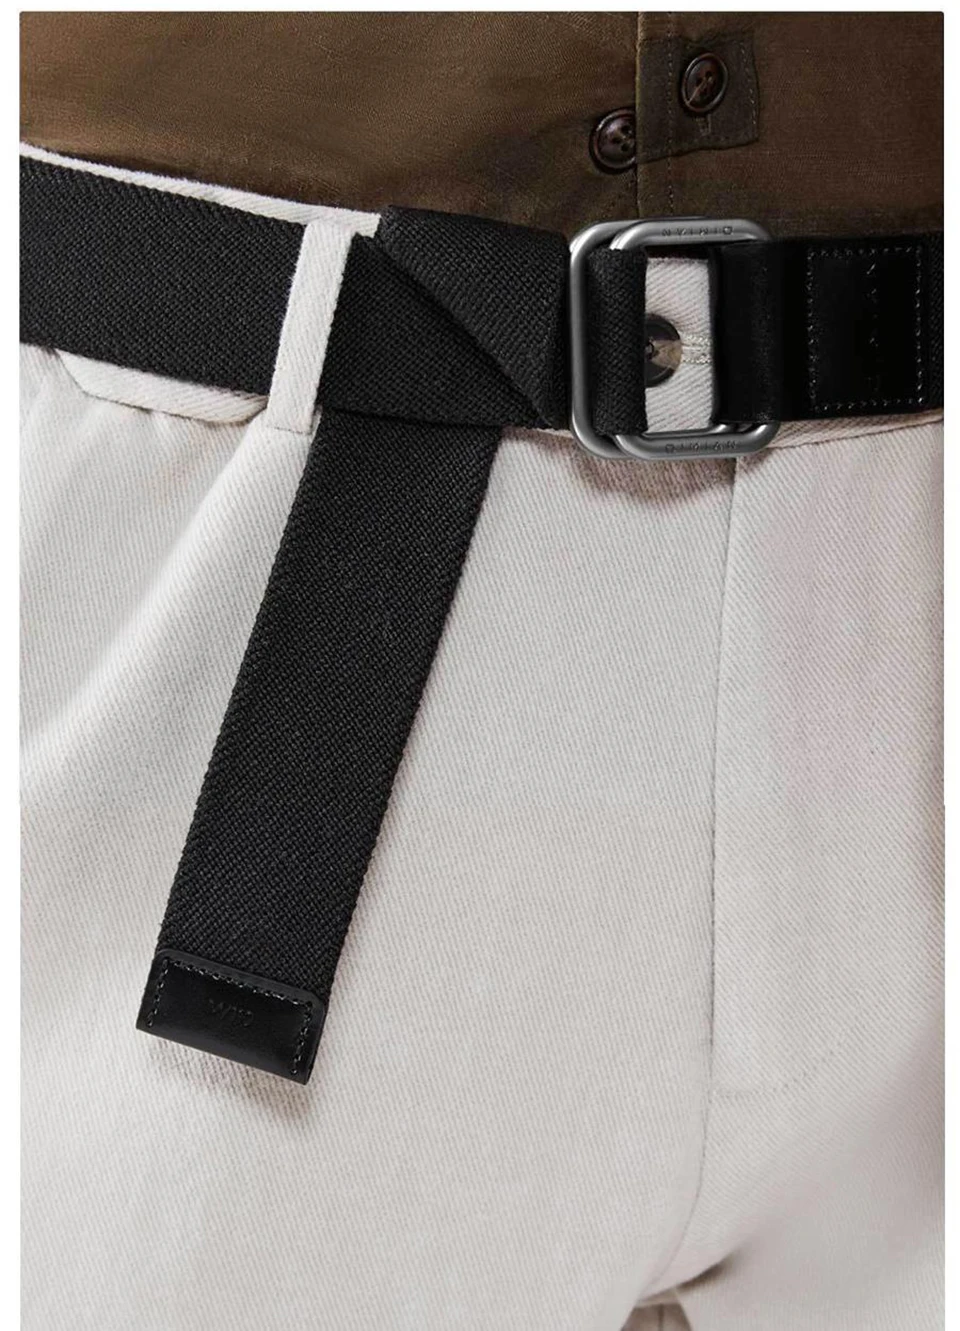 Xiaomi qimian мужской спортивный пояс стрейч ткань мужской пояс ремень двойная Пряжка ремни для мужчин на открытом воздухе высокого качества